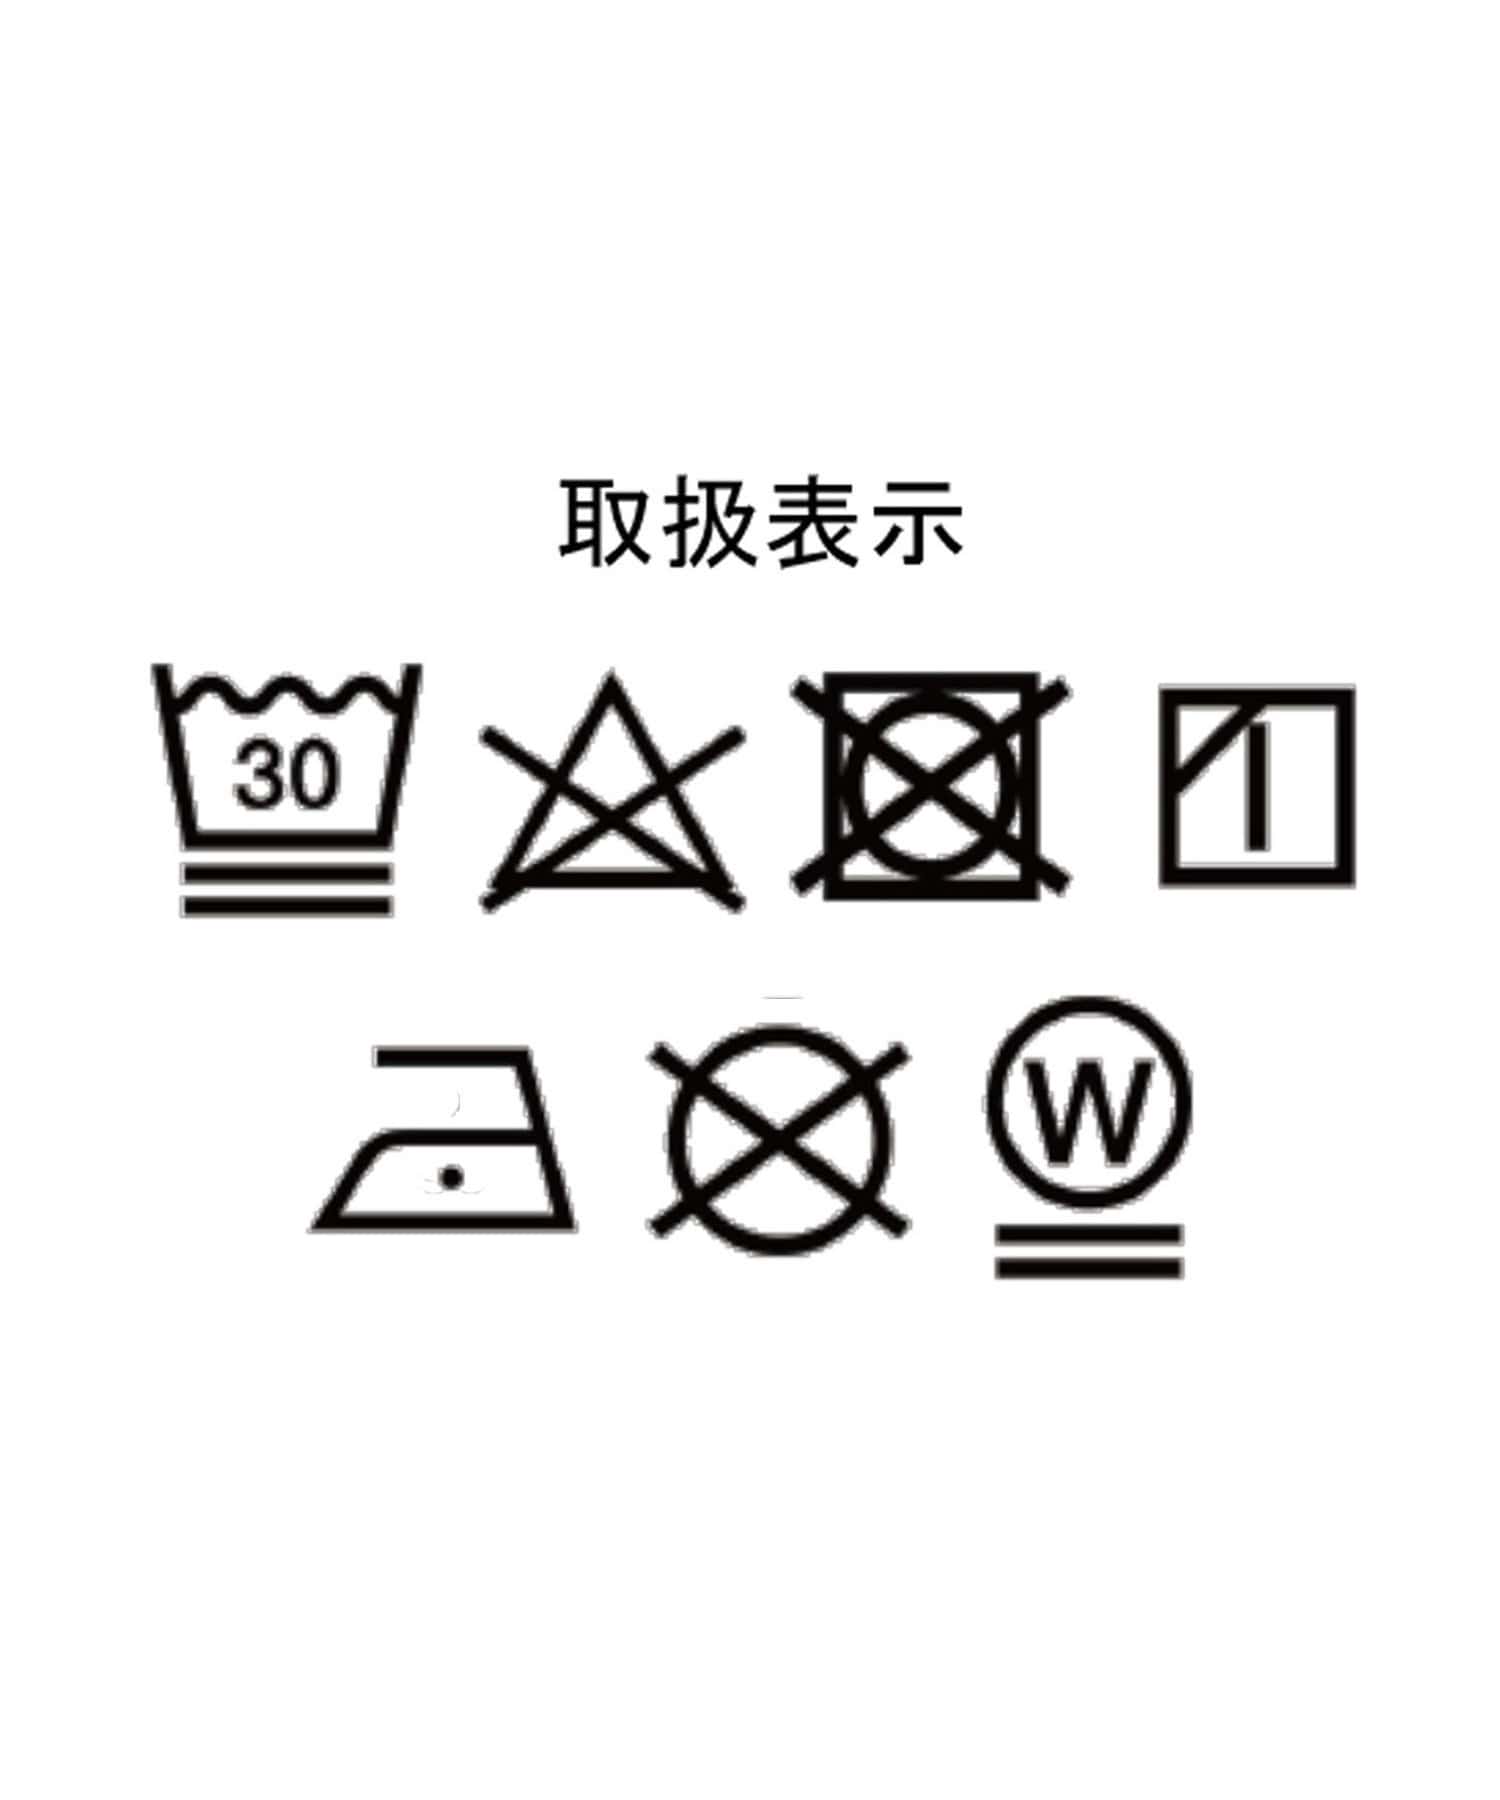 DISCOAT(ディスコート) ≪WEB限定≫【ユニセックス】刺繍ロゴモチーフビッグスウェット